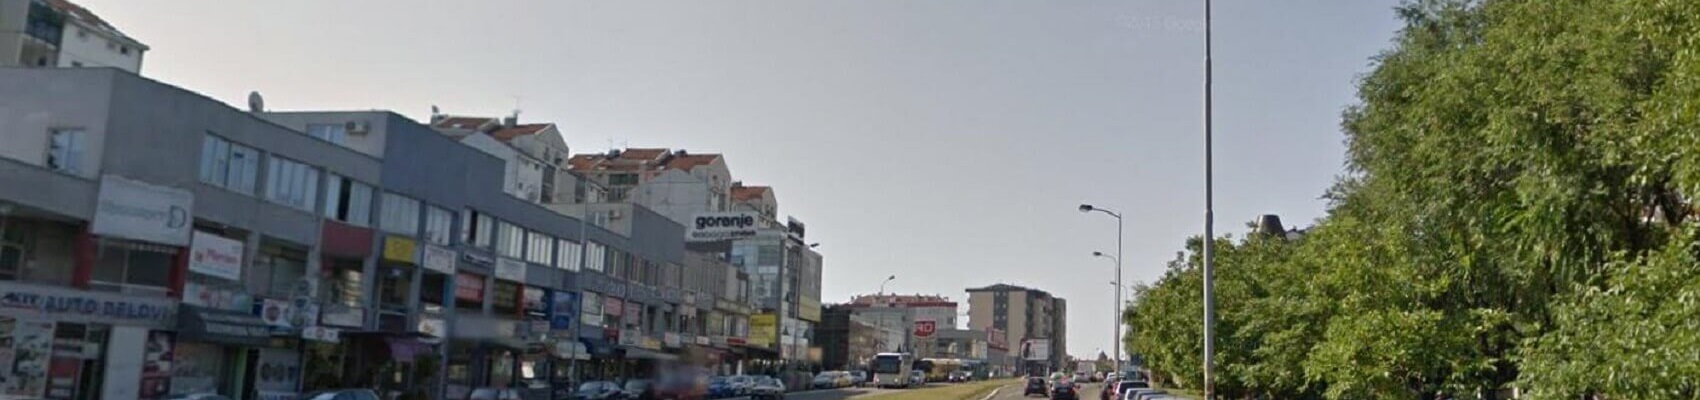 Аренда авто Јулино брдо, прокат автомобиля: Зим, Белград